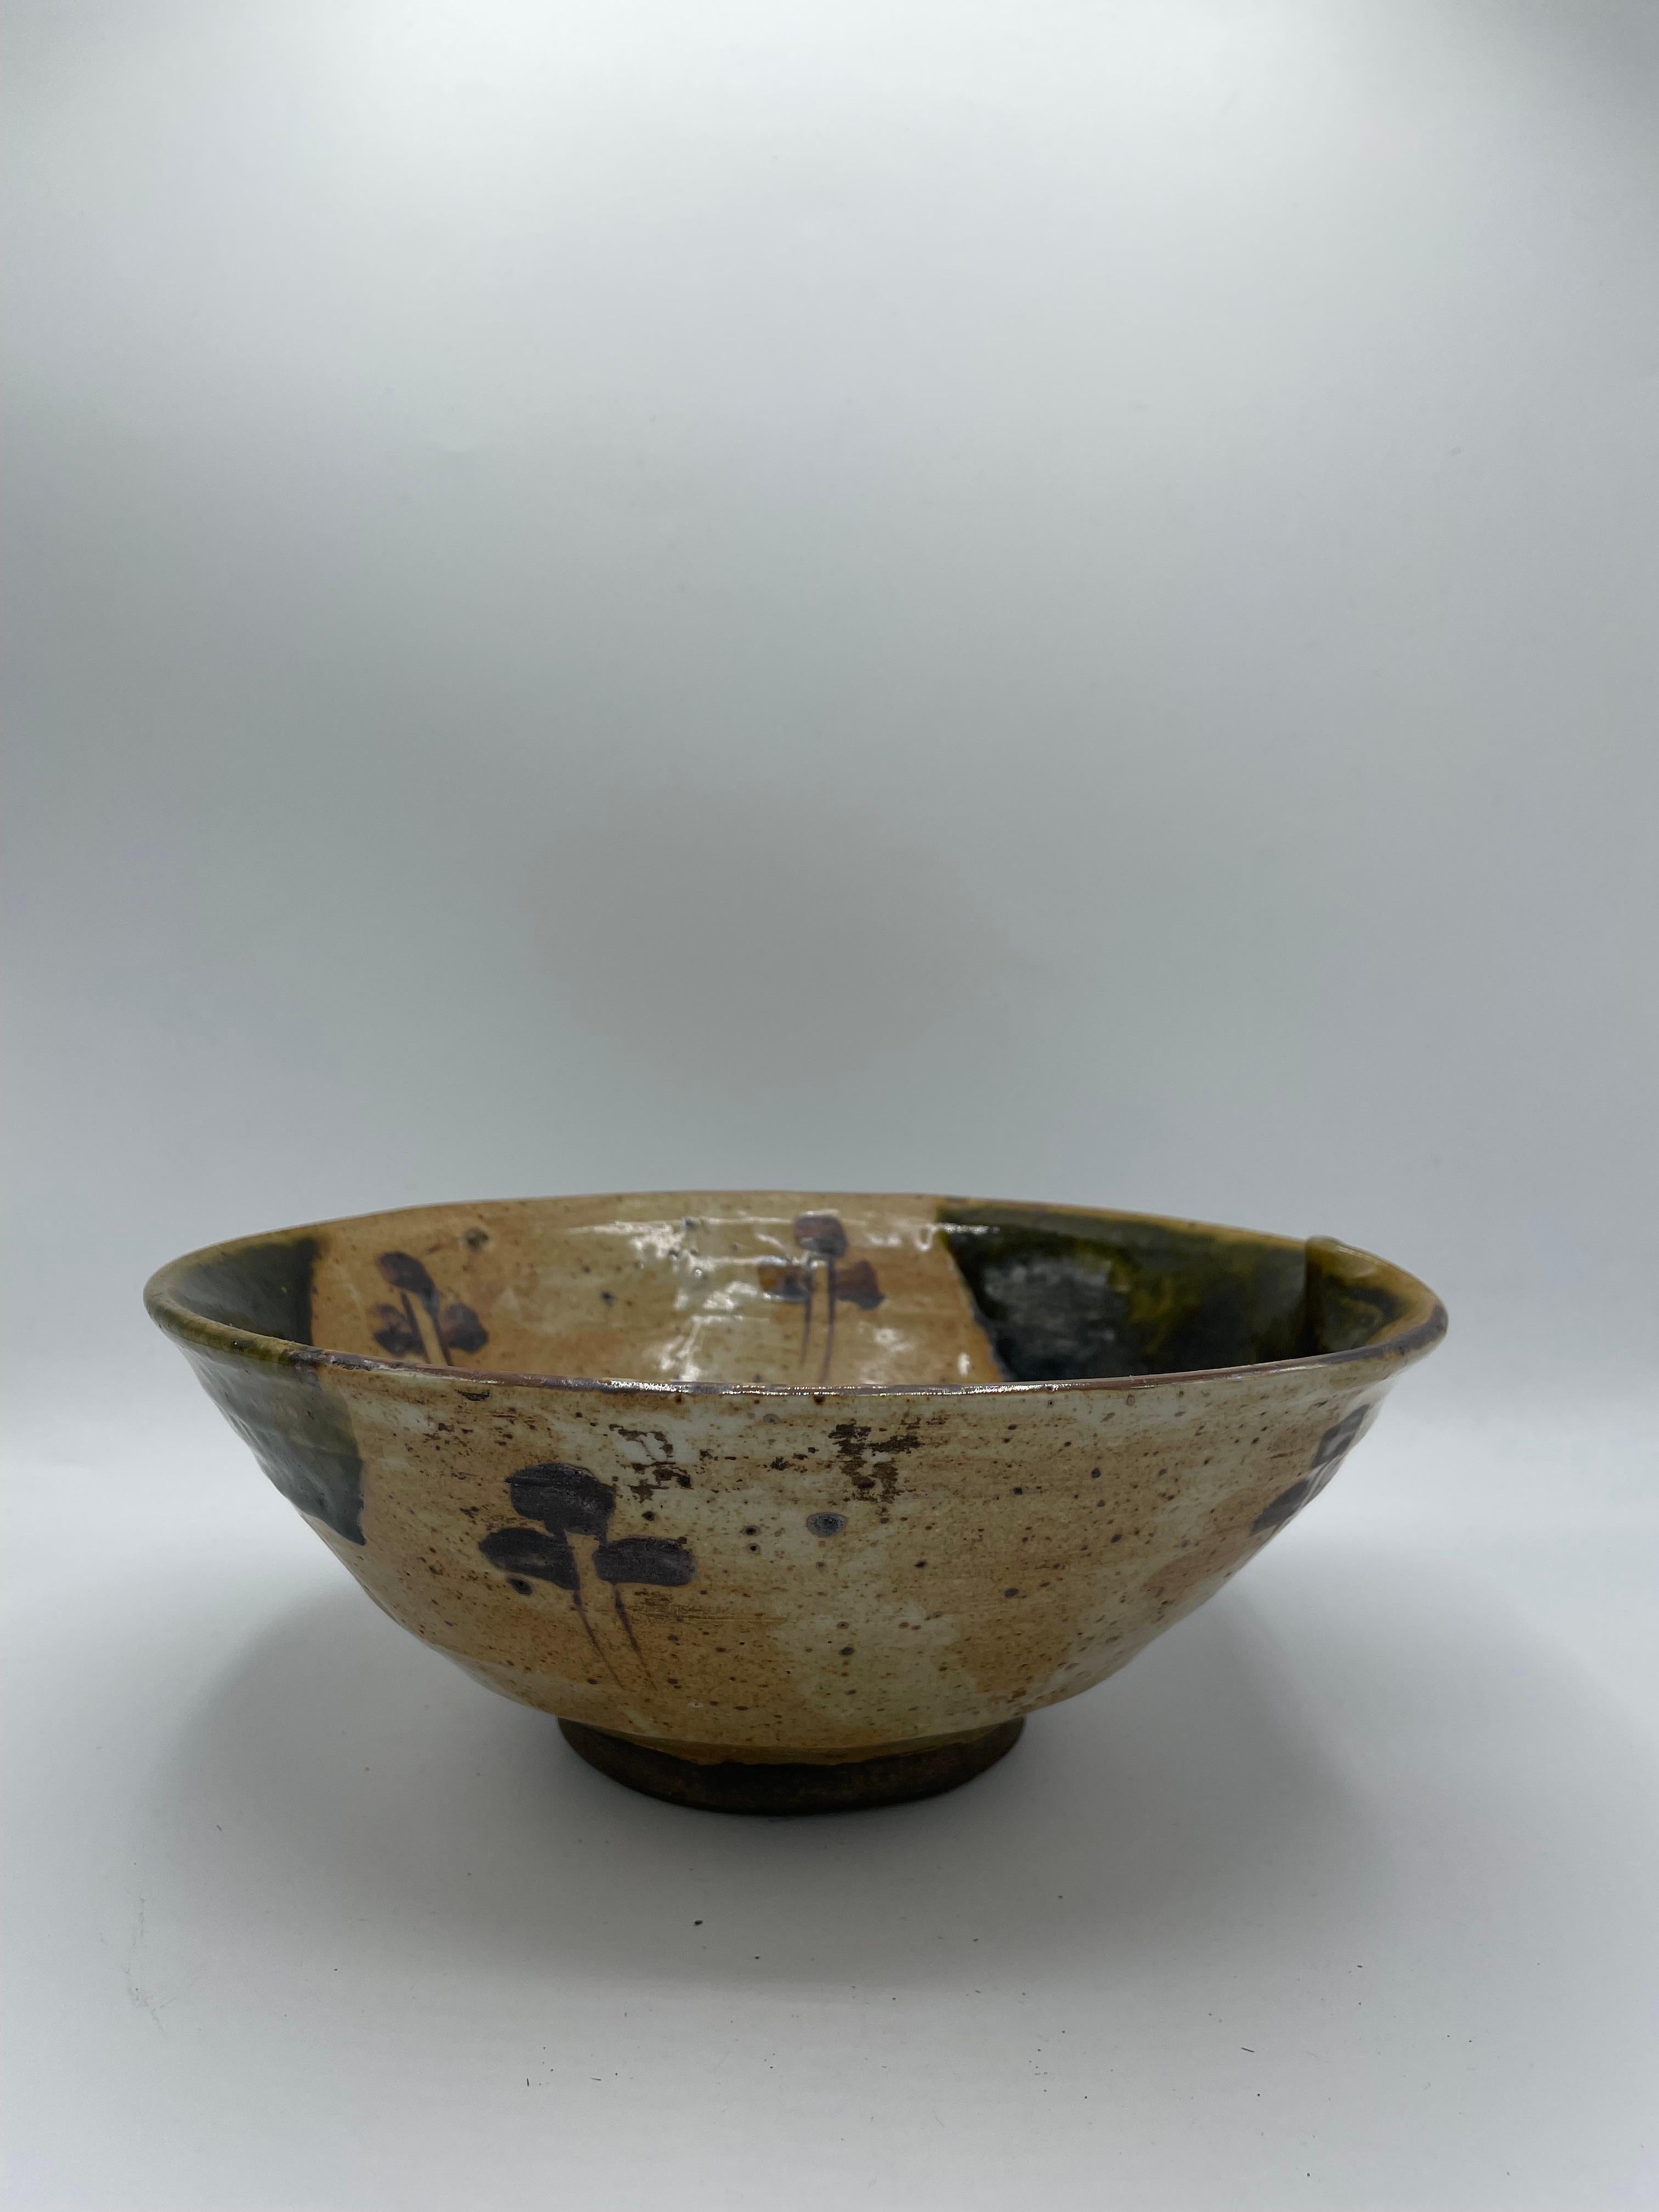 Dies ist eine antike Servierschale aus Porzellan.
Es wird mit der Oribe-Ware-Technik in Japan hergestellt. Diese Schale wurde in der Edo-Zeit um 1850 hergestellt.

Oribe-Ware (Oribe-yaki) ist ein japanischer Keramikstil, der erstmals im sechzehnten